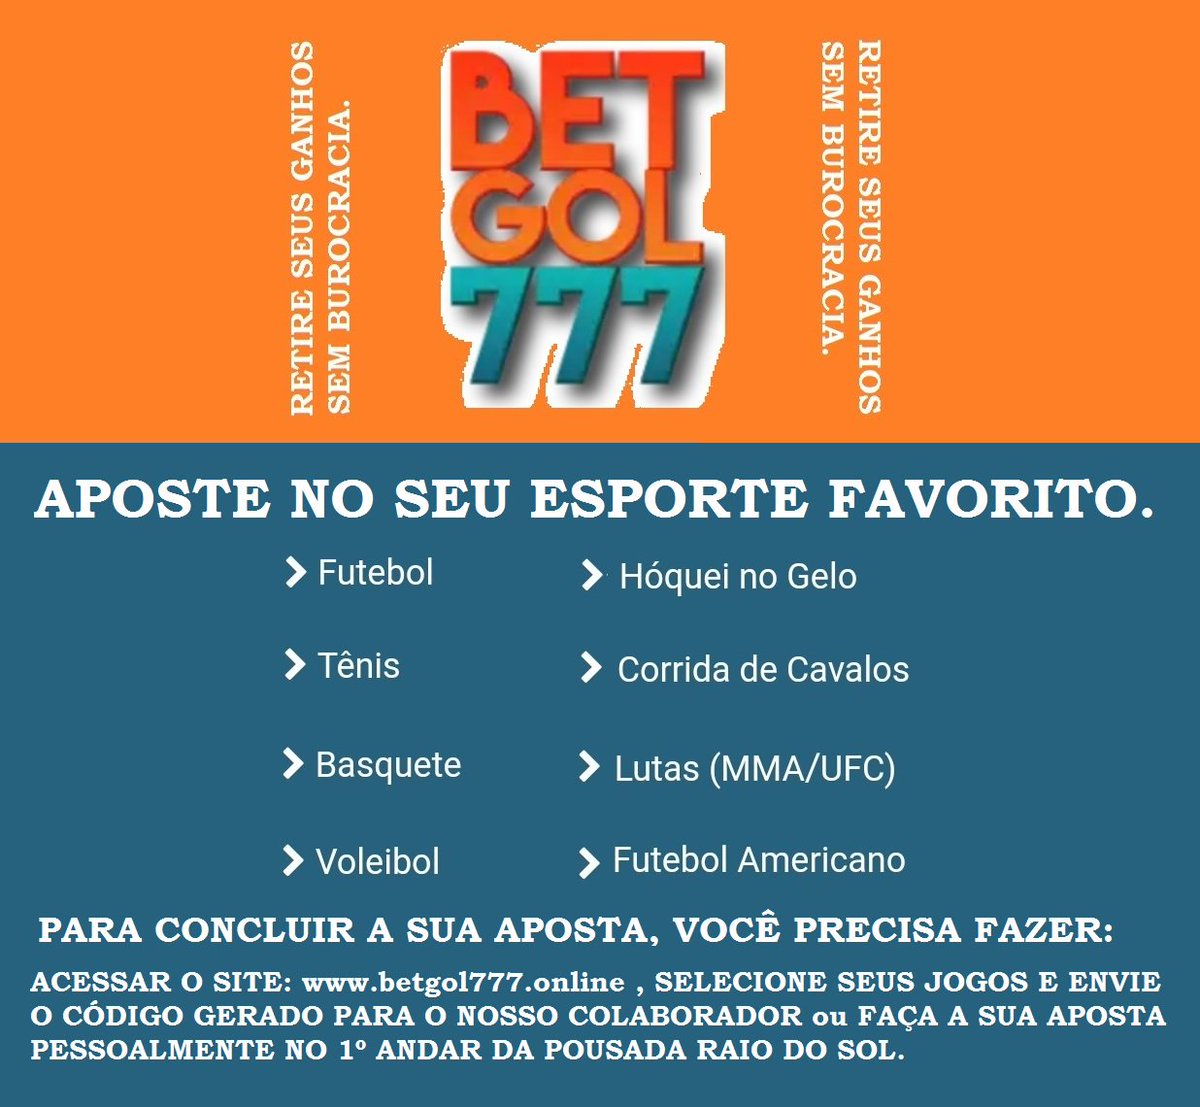 Pousada Raio do Sol on X: * UM OFERECIMENTO DE: #BETGOL777